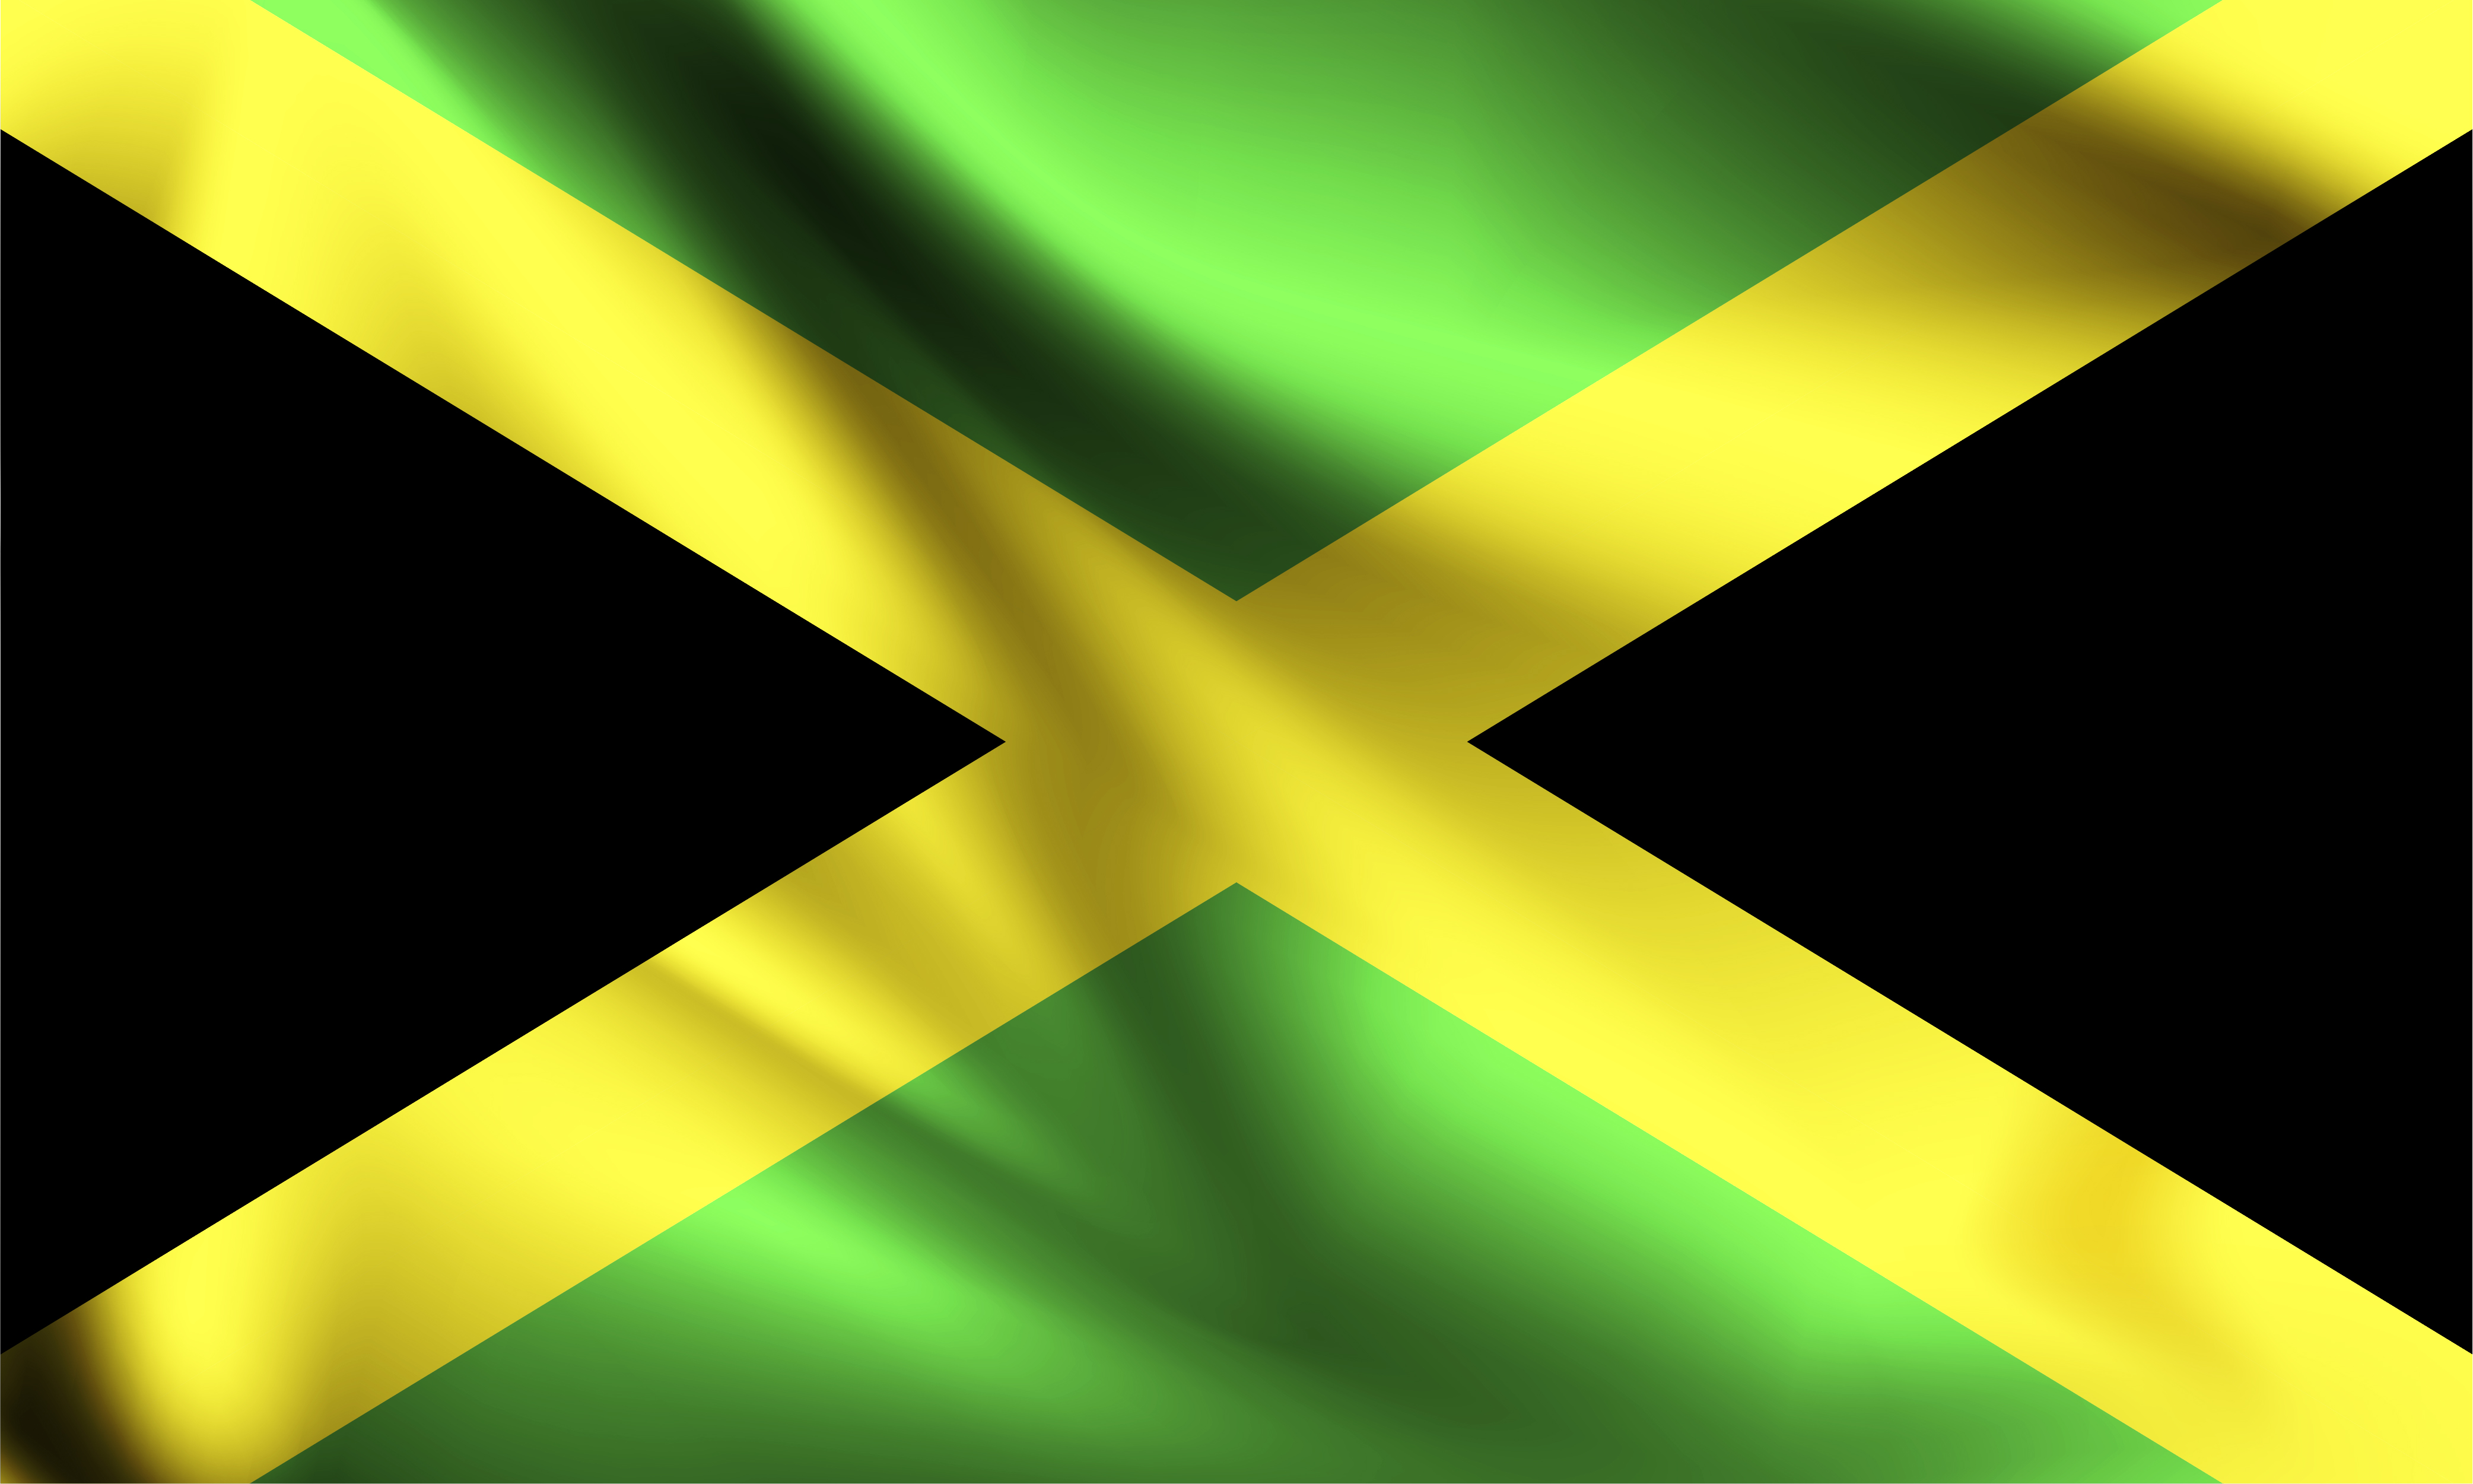 Jamaica 3d flag 1228927 Vector Art at Vecteezy